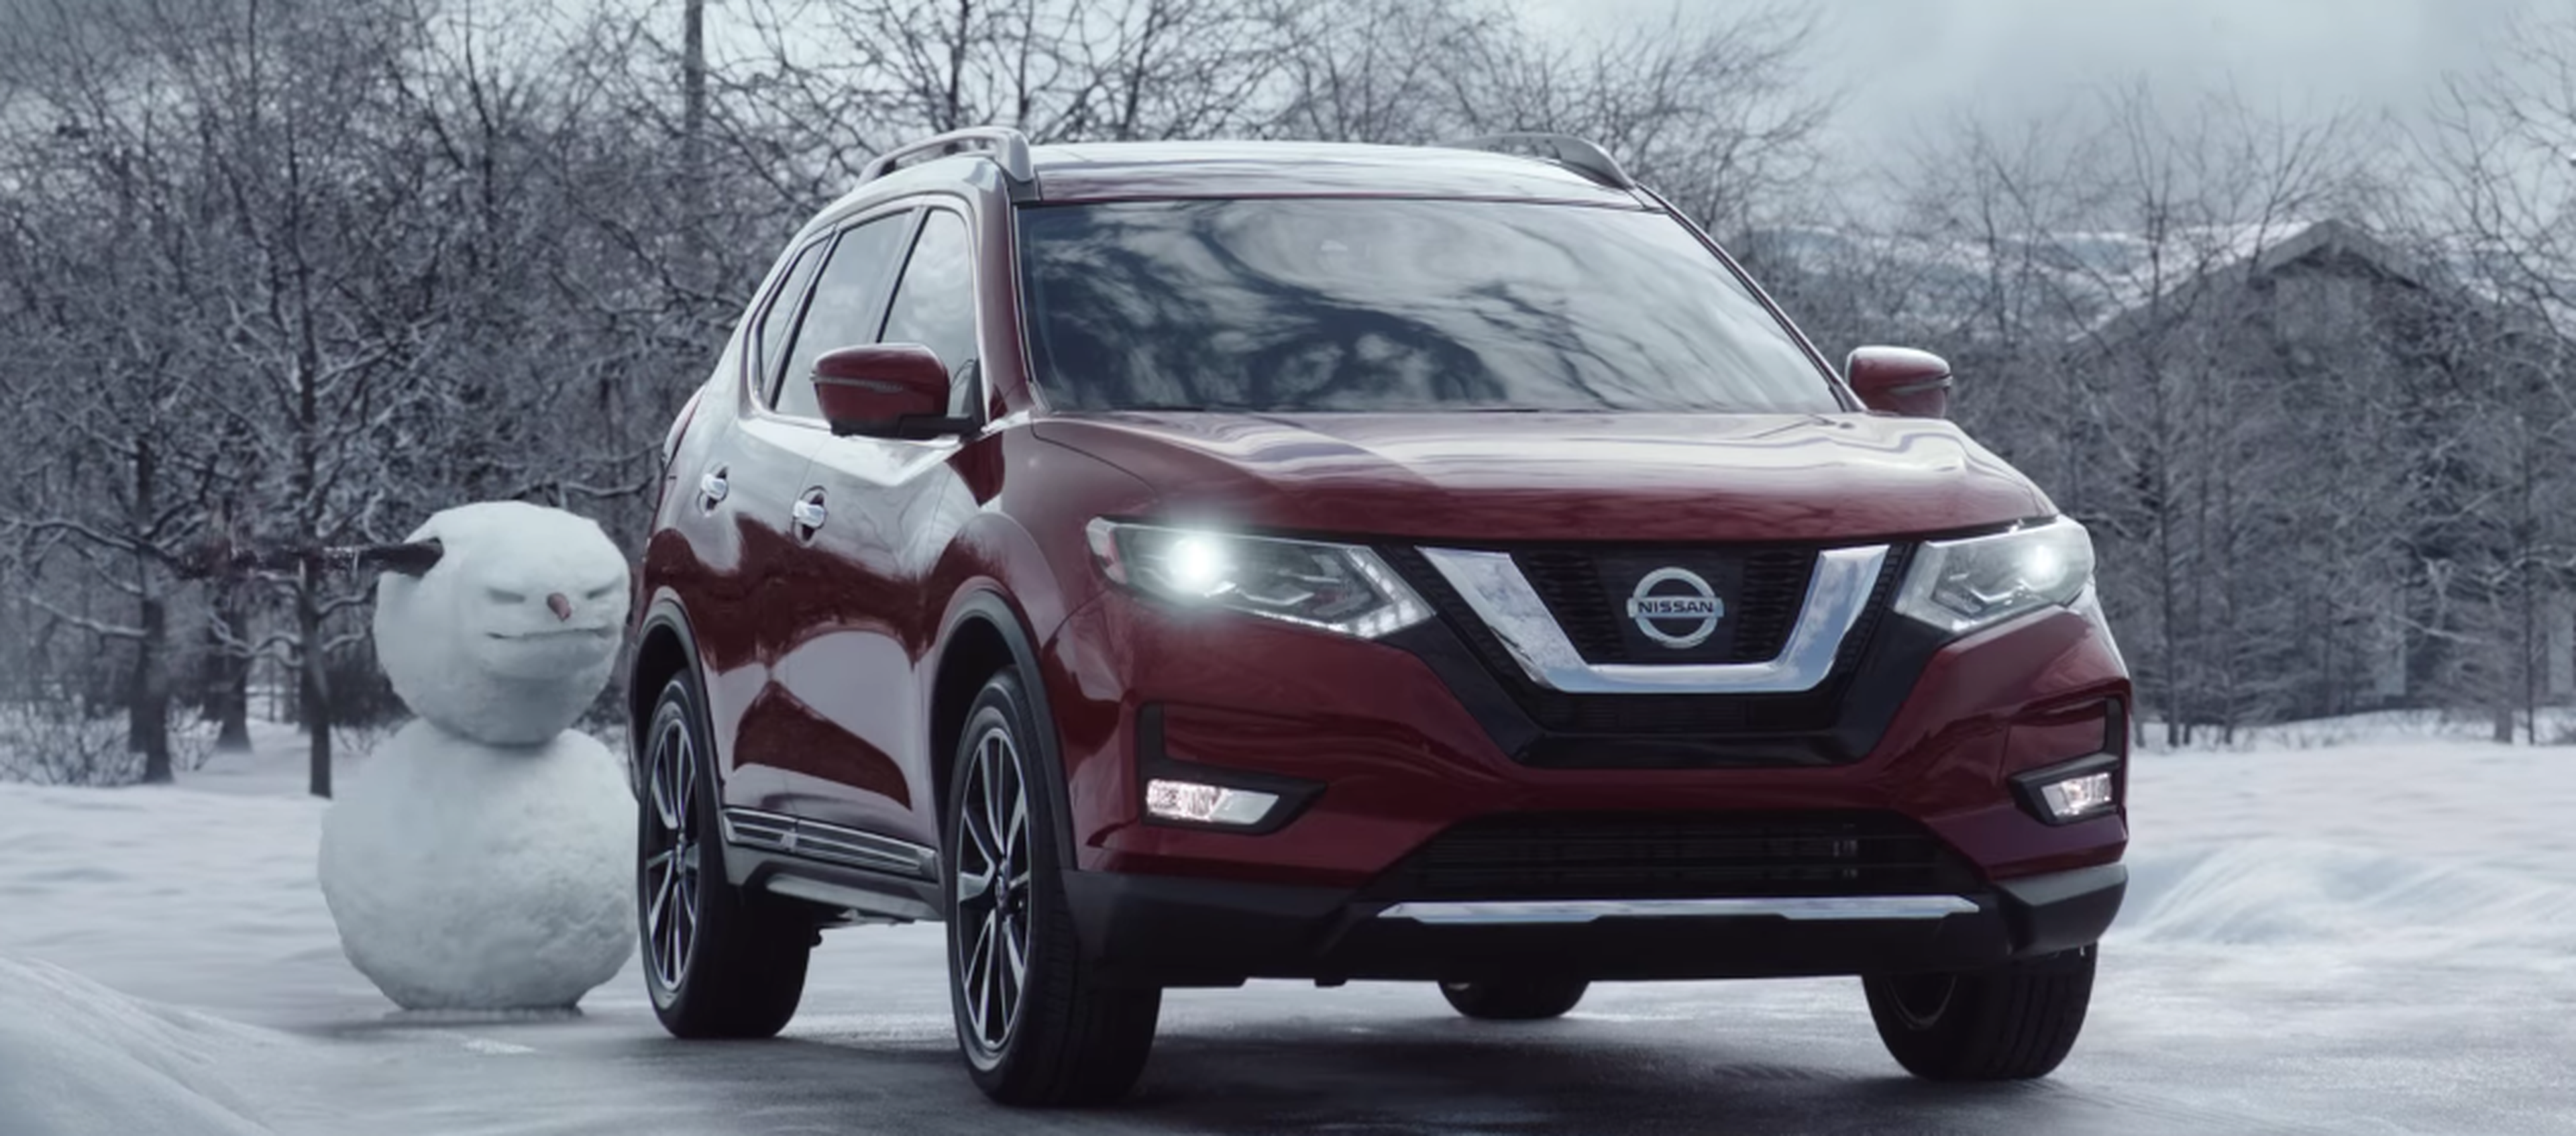 VÍDEO: El Nissan Rogue 2017 se enfrenta a lo "peor" del invierno